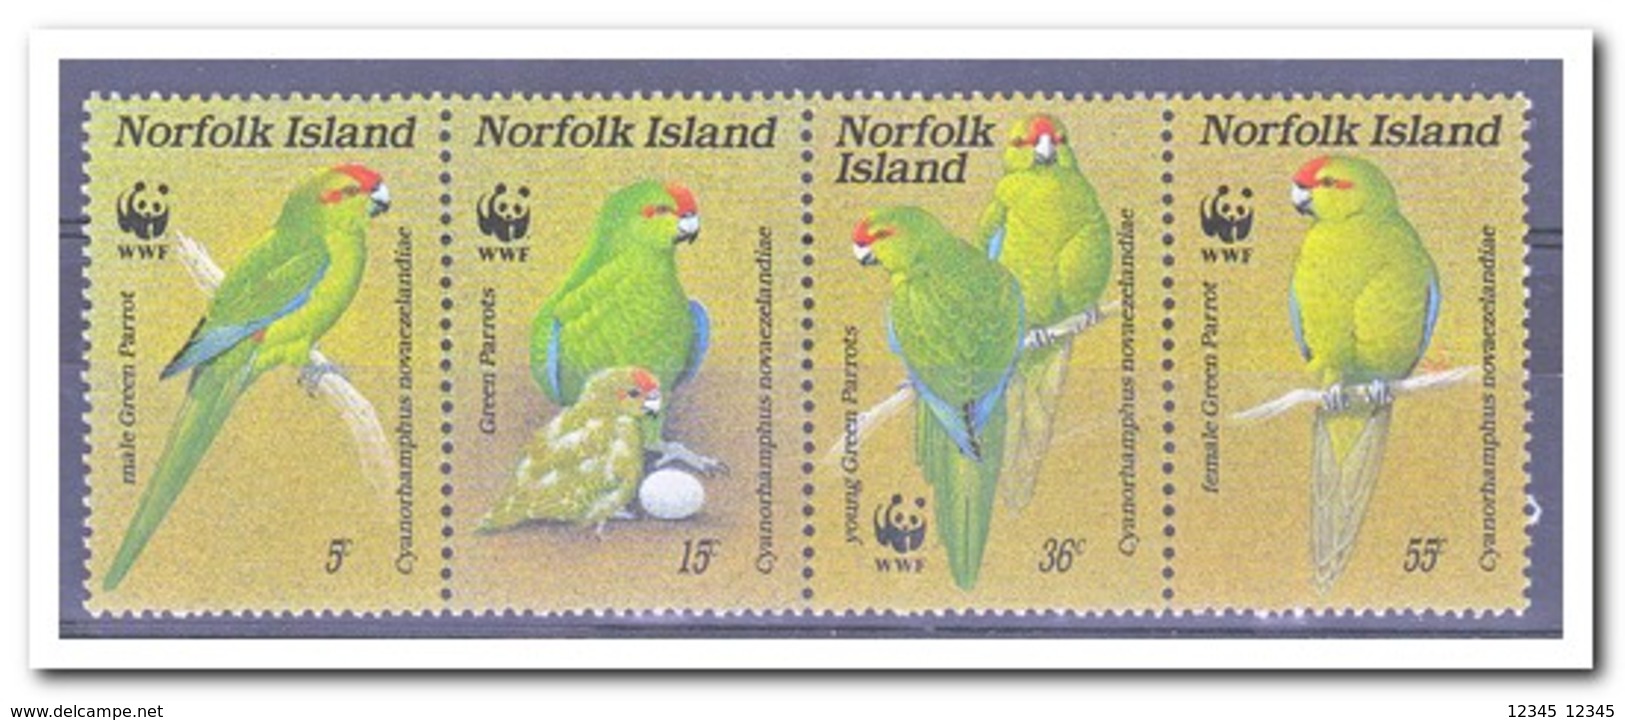 Norfolk 1987, Postfris MNH, Birds - Norfolk Eiland